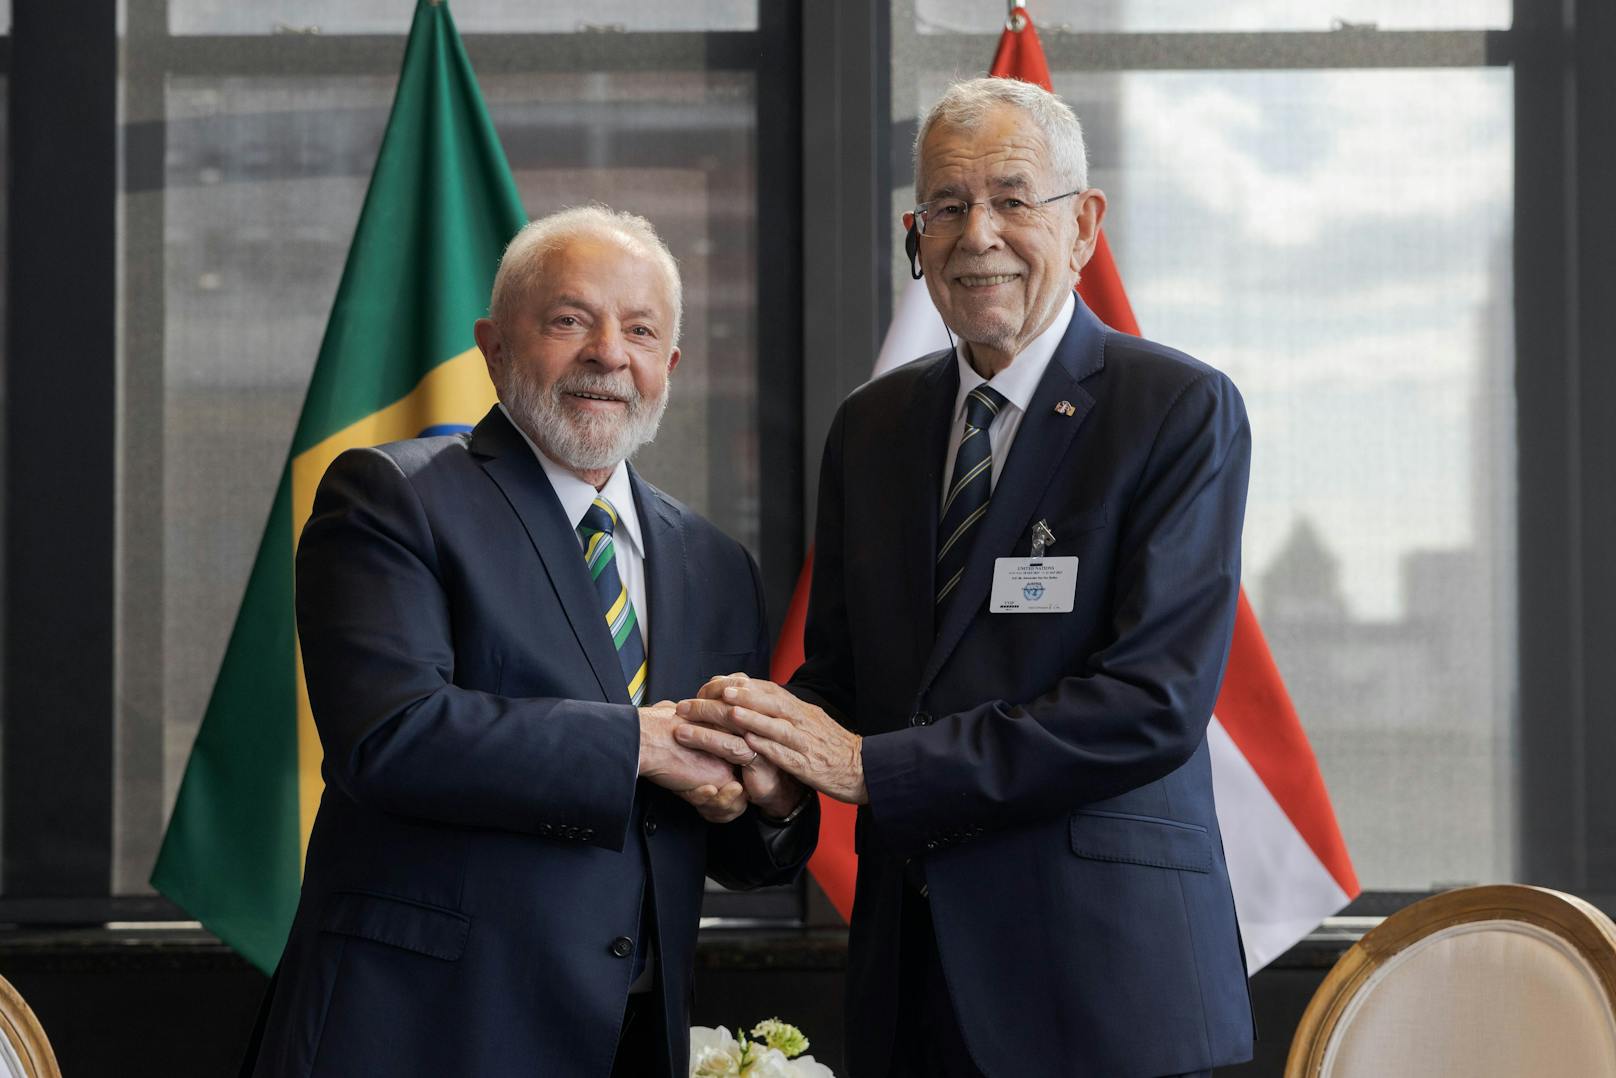 Große Schmerzen – Rätsel um Lula nach Österreich-Treffen